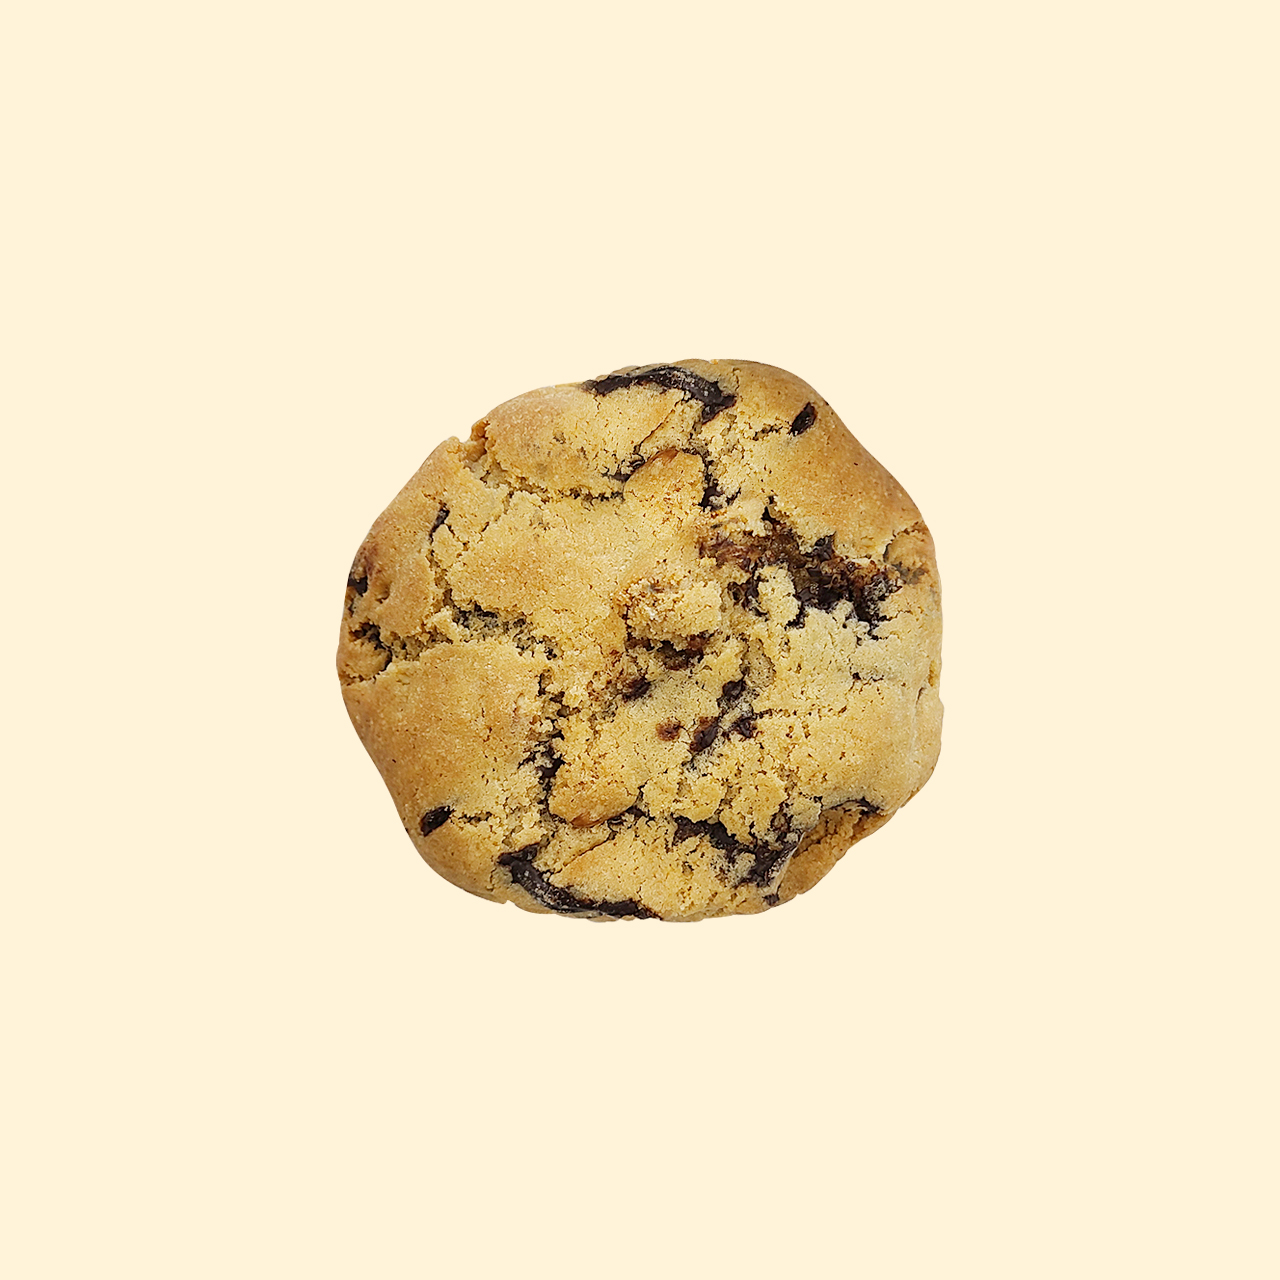 클래식 르뱅쿠키 (Classic levain cookie)